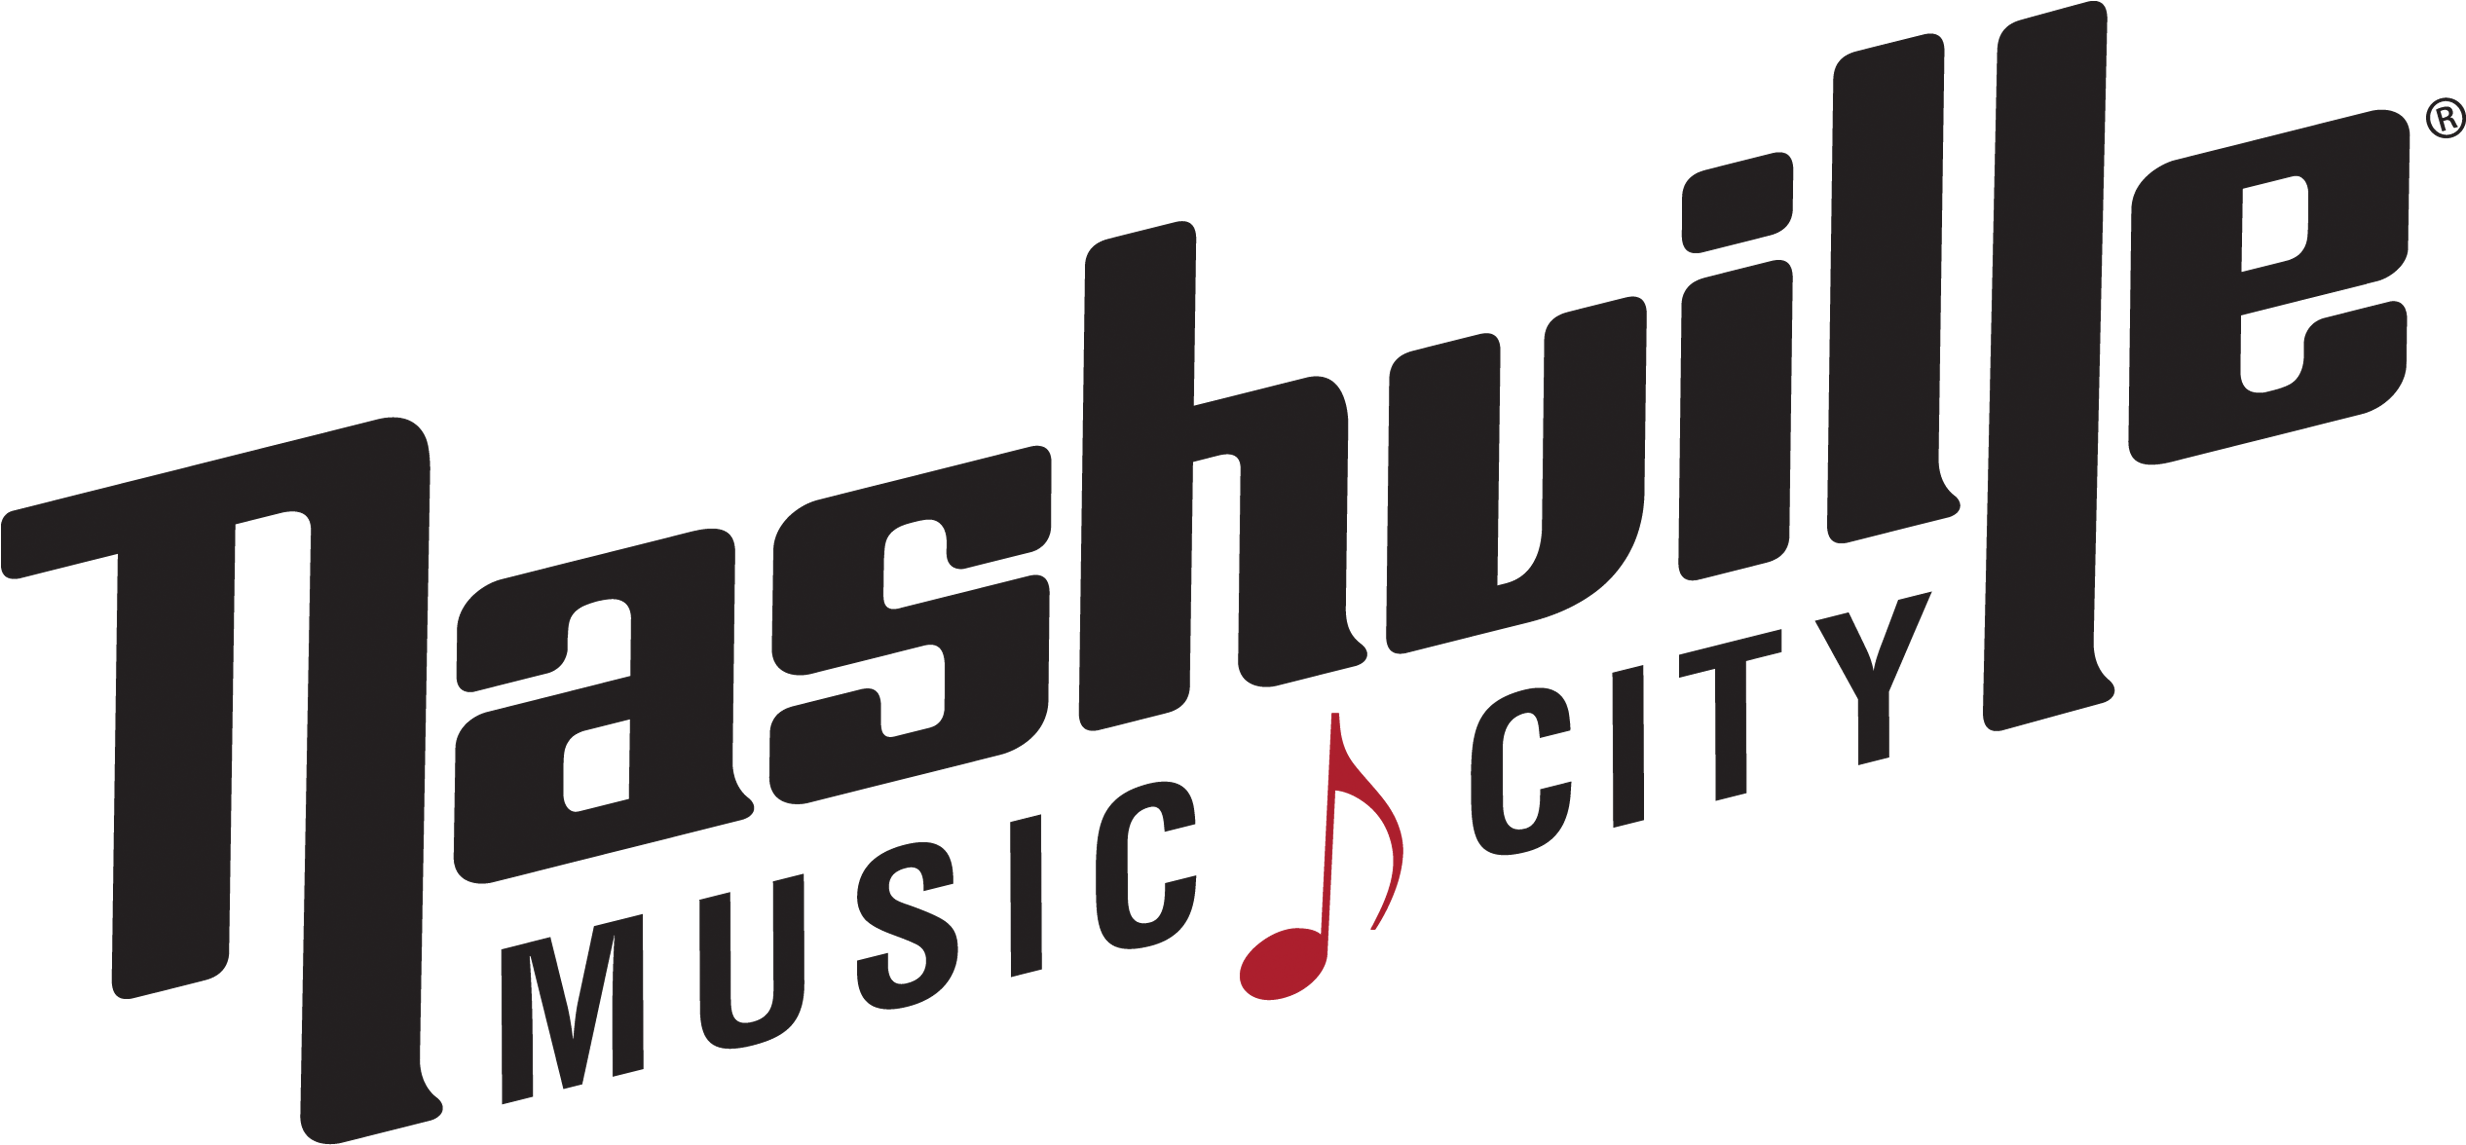 Nashville Charter Bus Tour - Nashville Convention And Visitors Bureau (2531x1175)